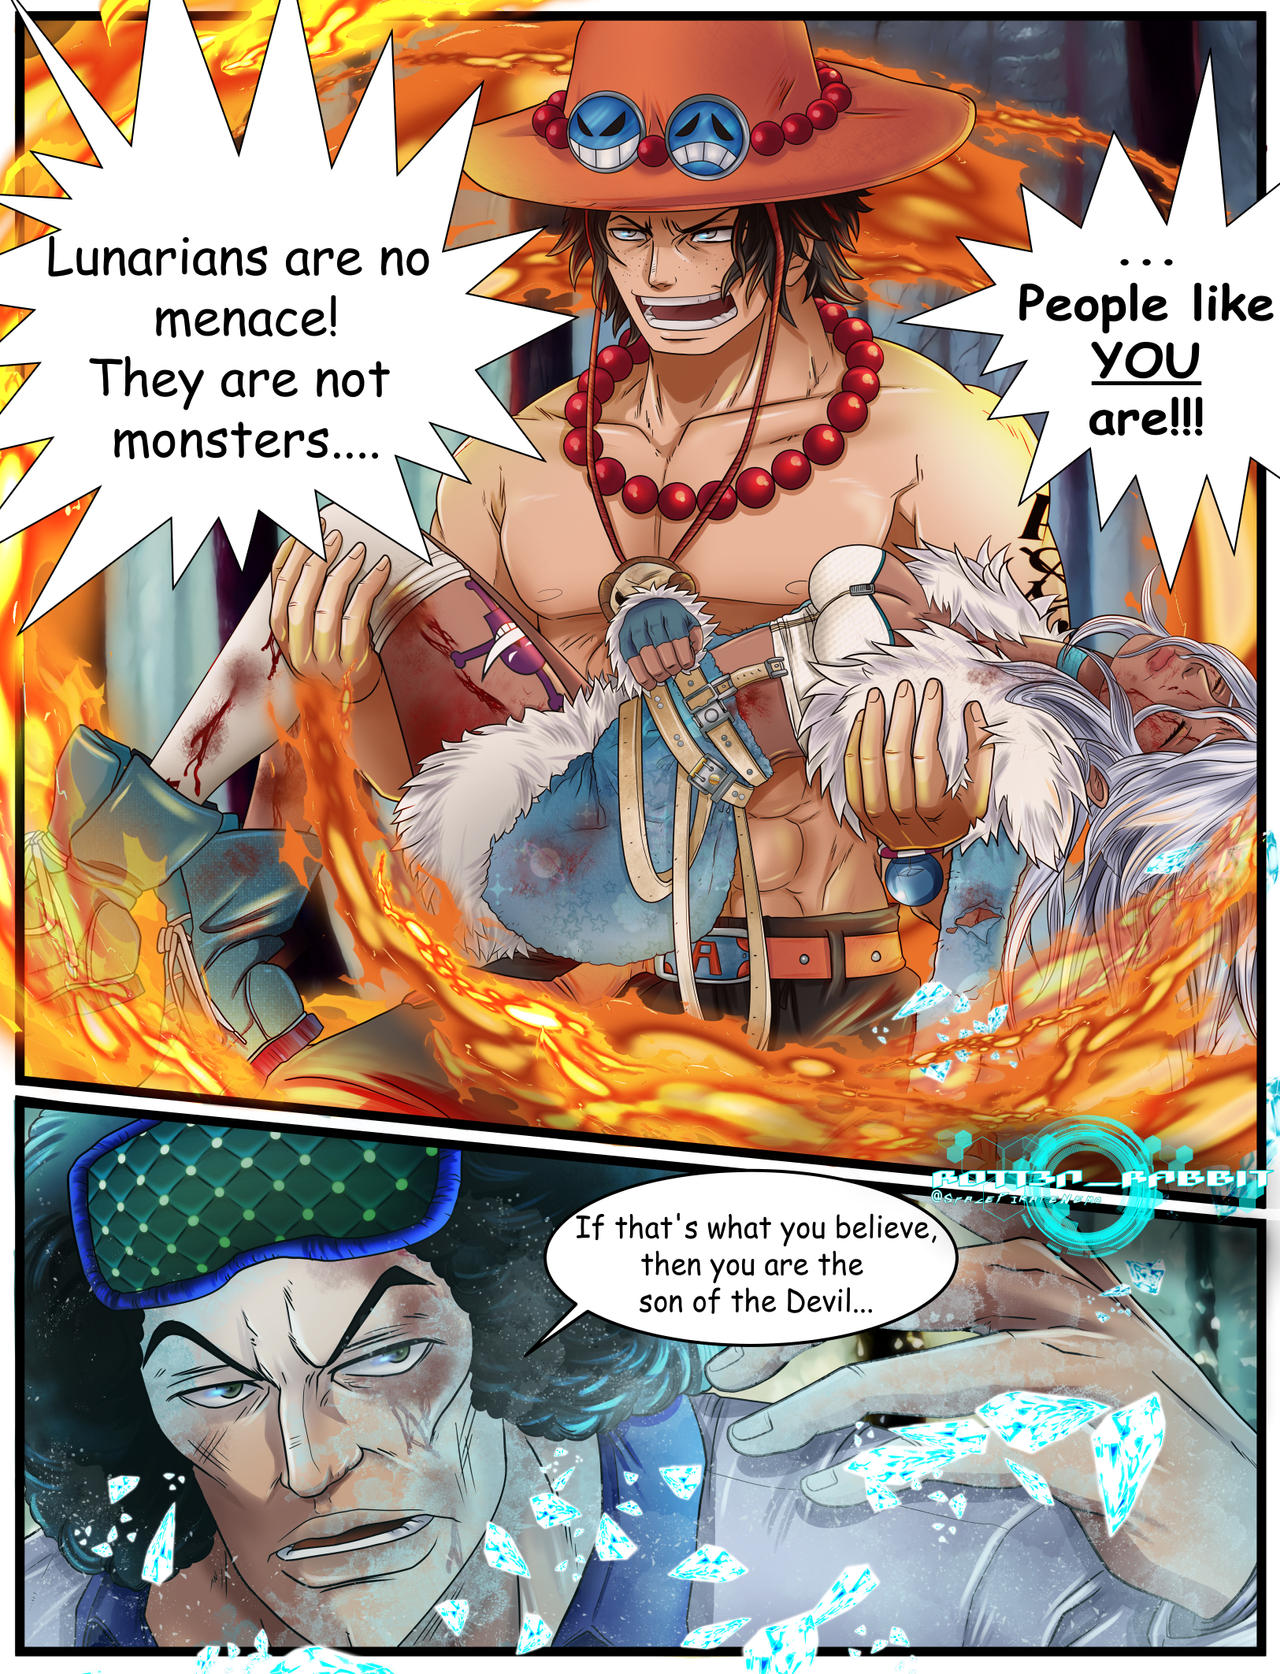 One Piece x Reader Inserts on Anime-Reader-Inserts - DeviantArt